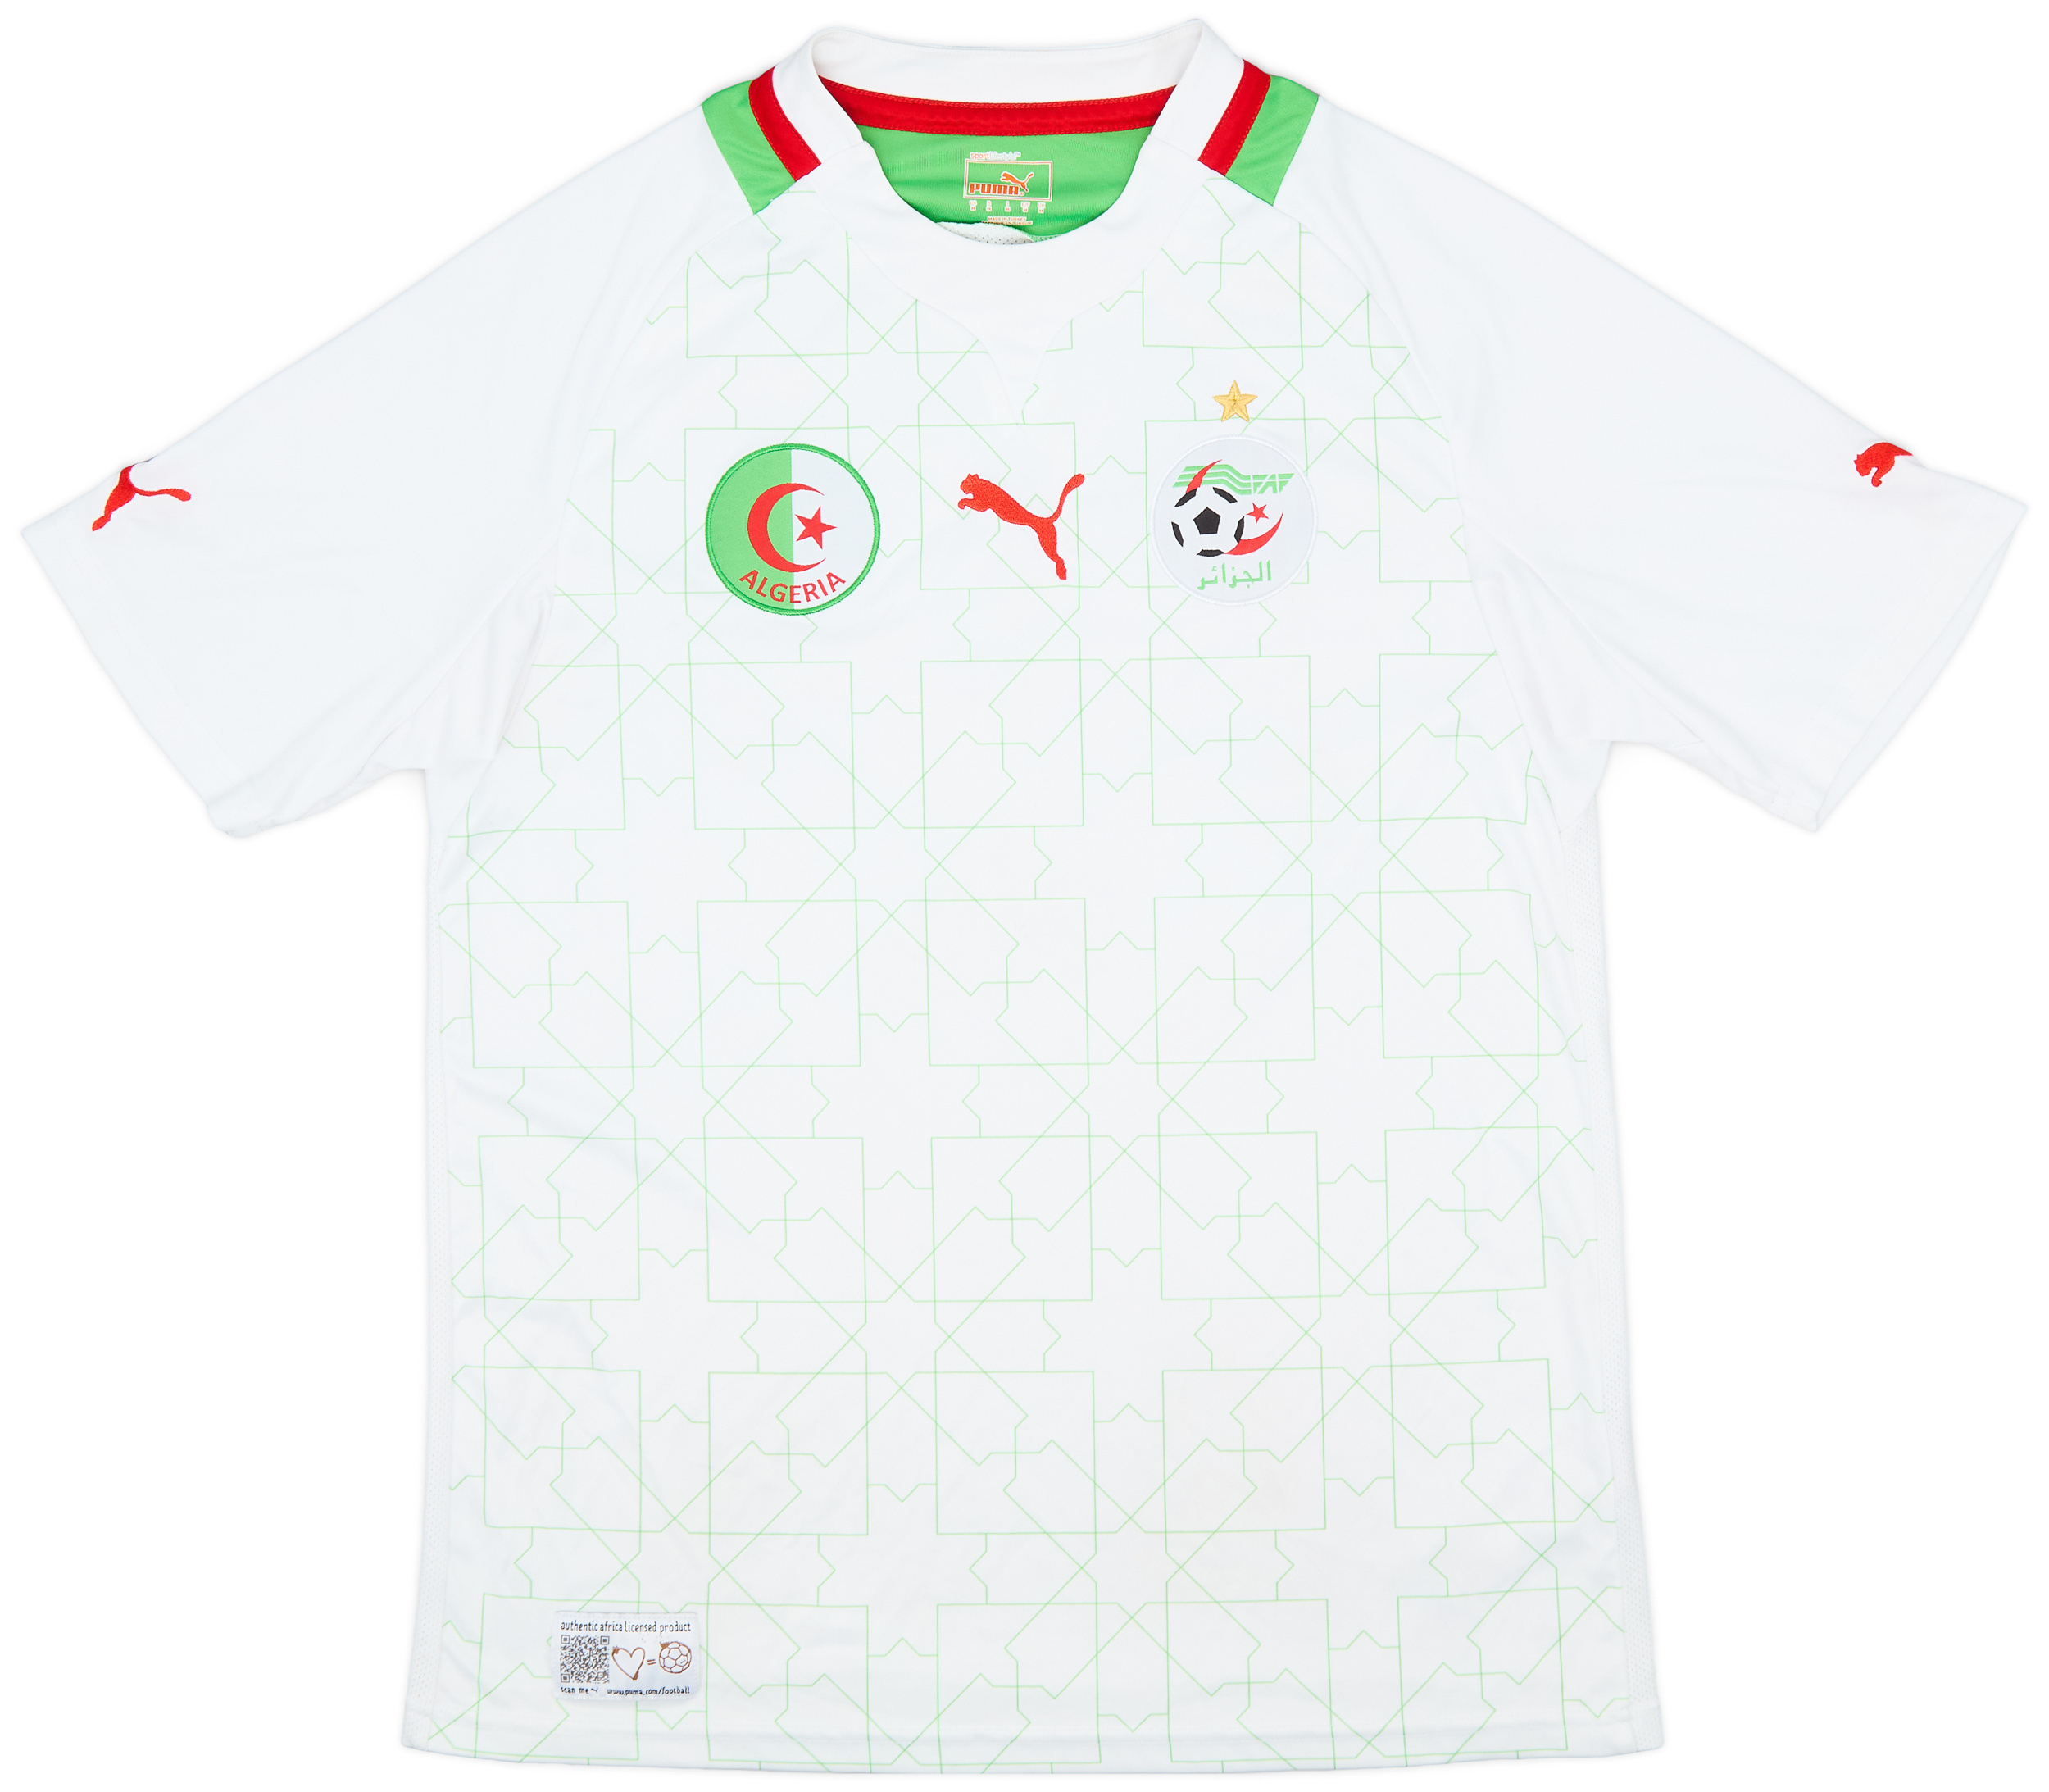 2012-13 Algeria Home Shirt - 9/10 - ()